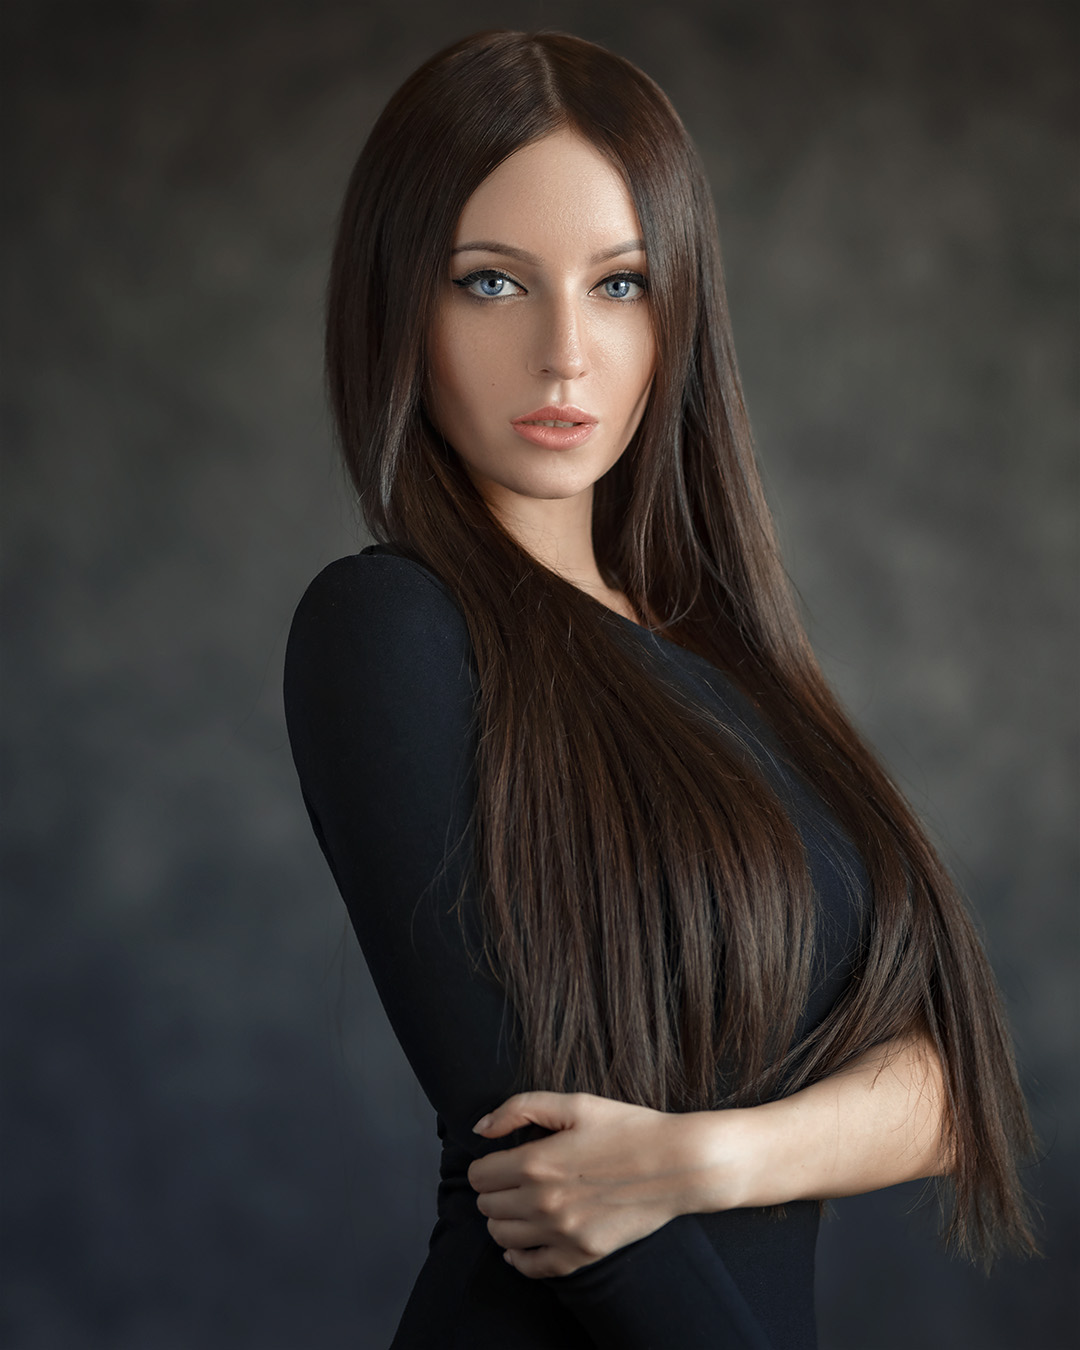 Evgeny Sibiraev Women Brunette Long Hair Makeup Blue Eyes Eyeliner Blouse Black Clothing Straight Ha 1080x1350